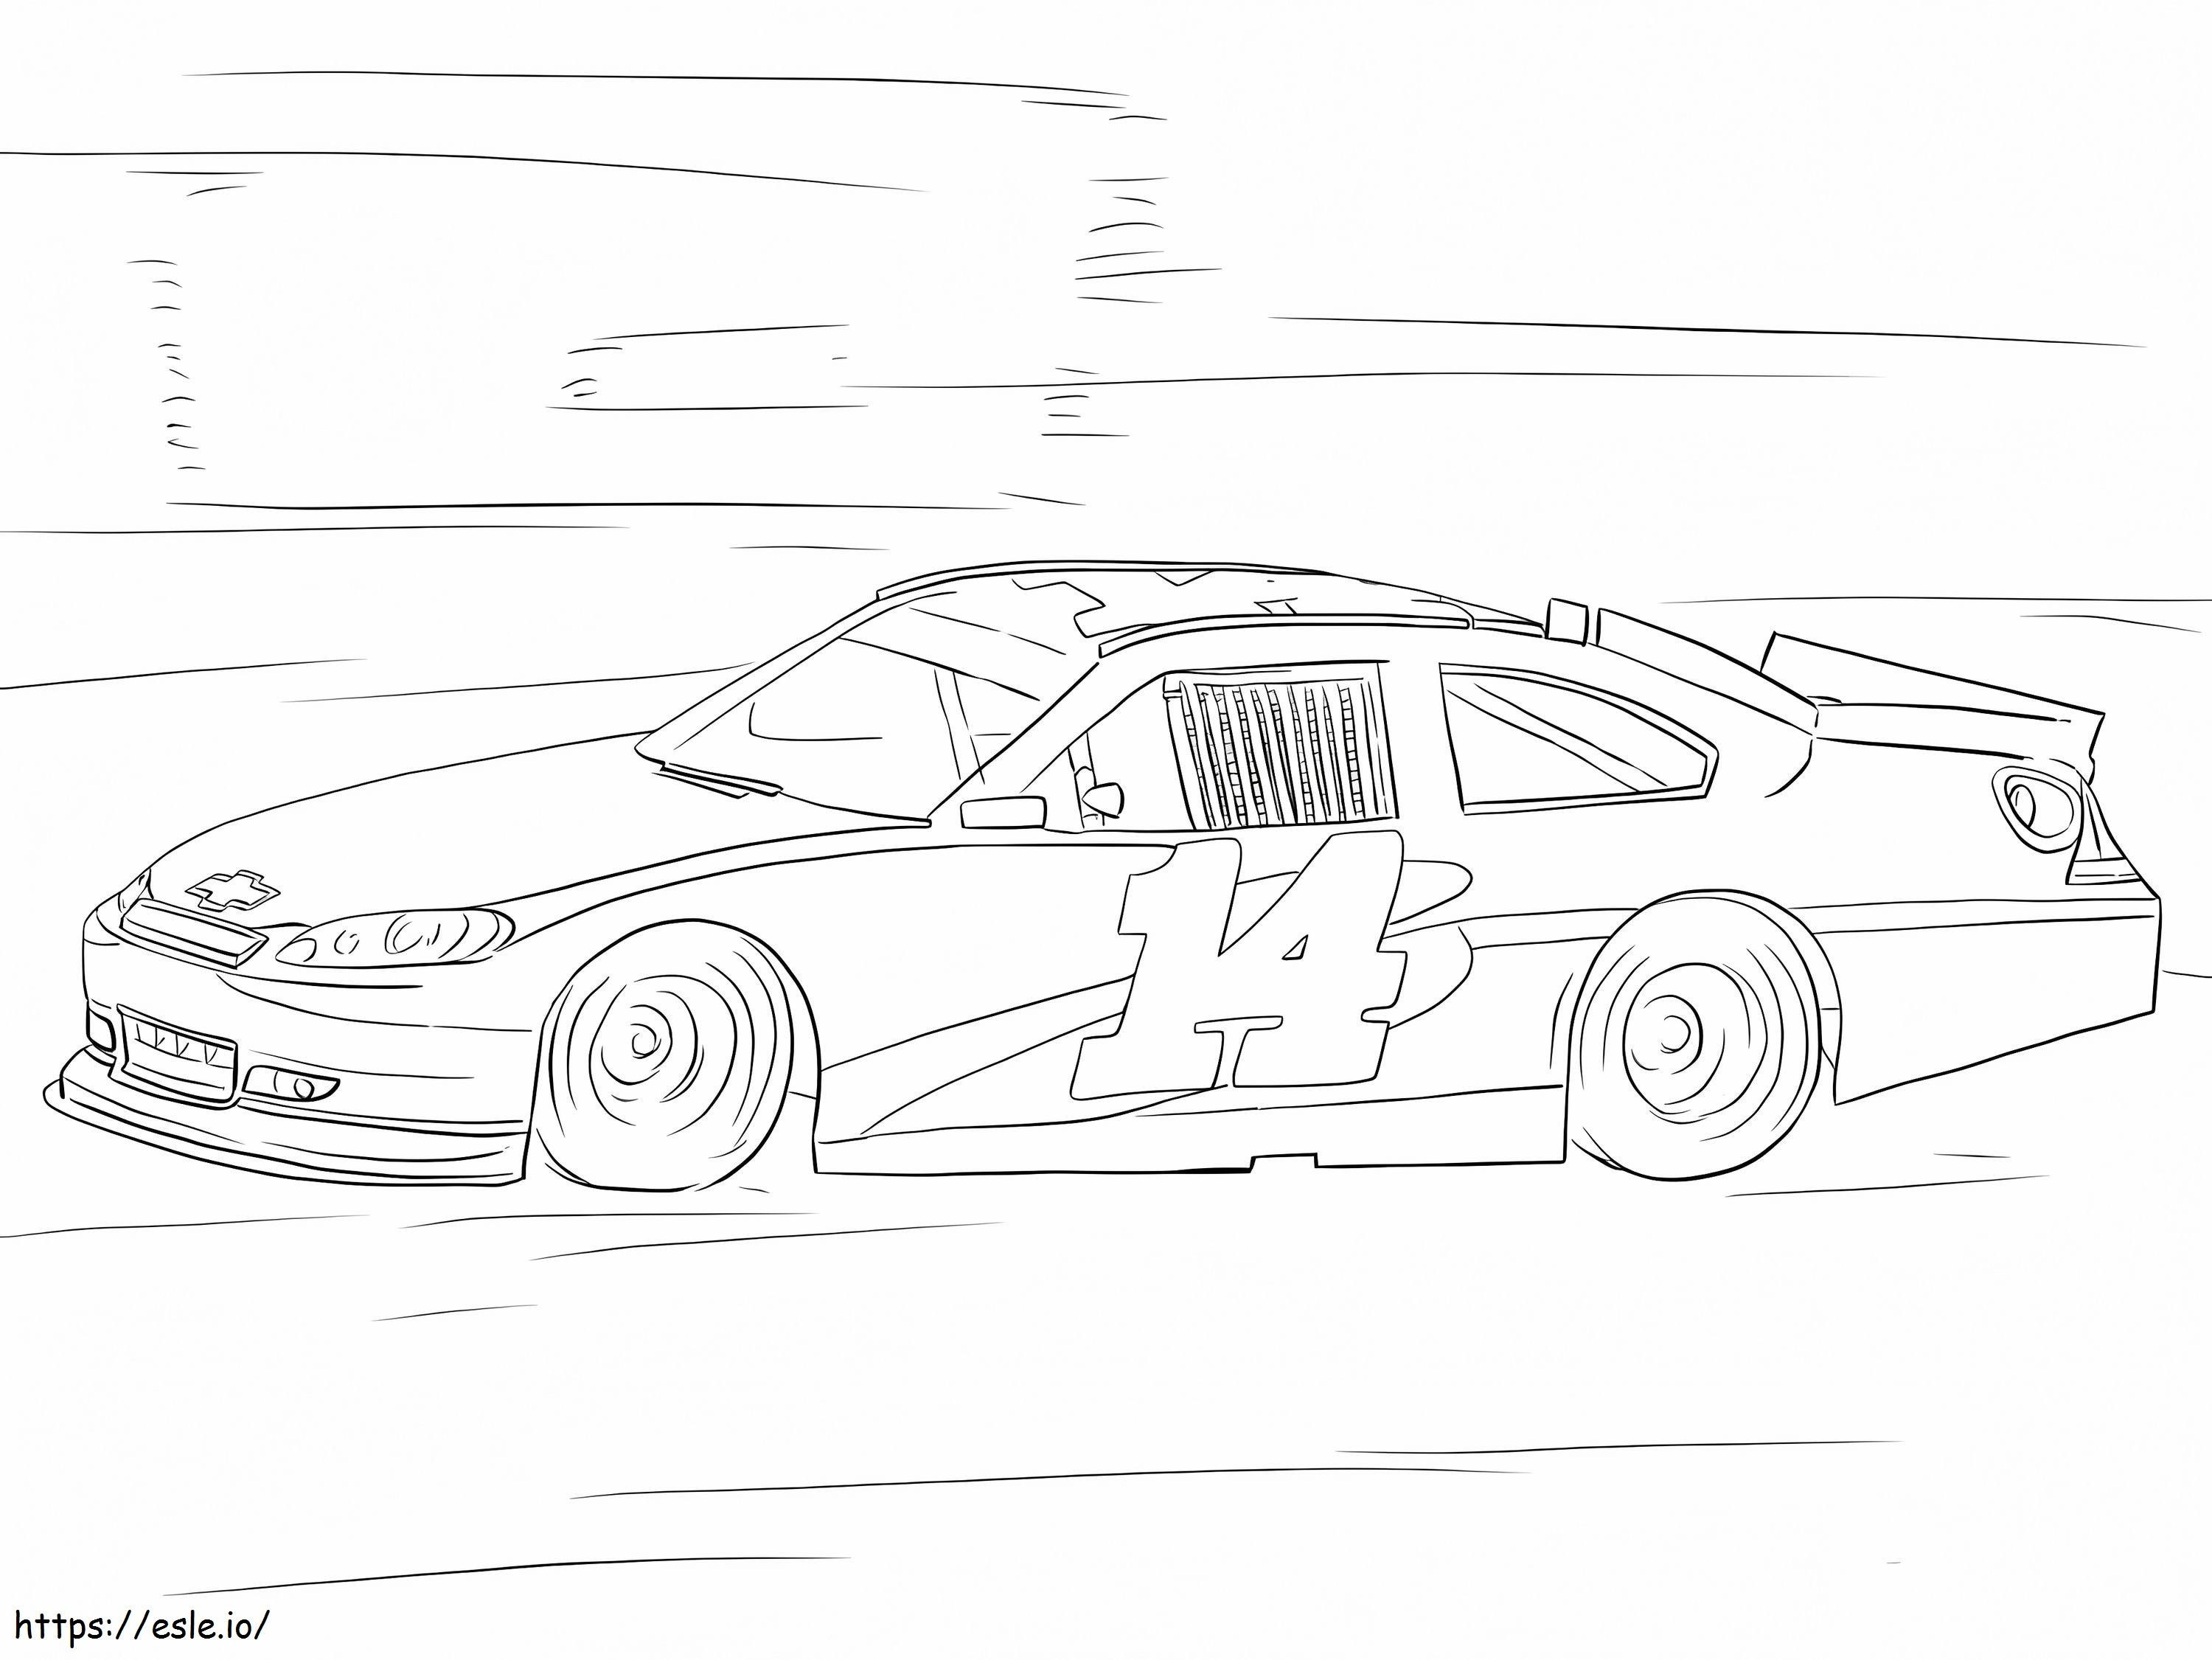 Coloriage Tony Stewart Voiture NASCAR à imprimer dessin